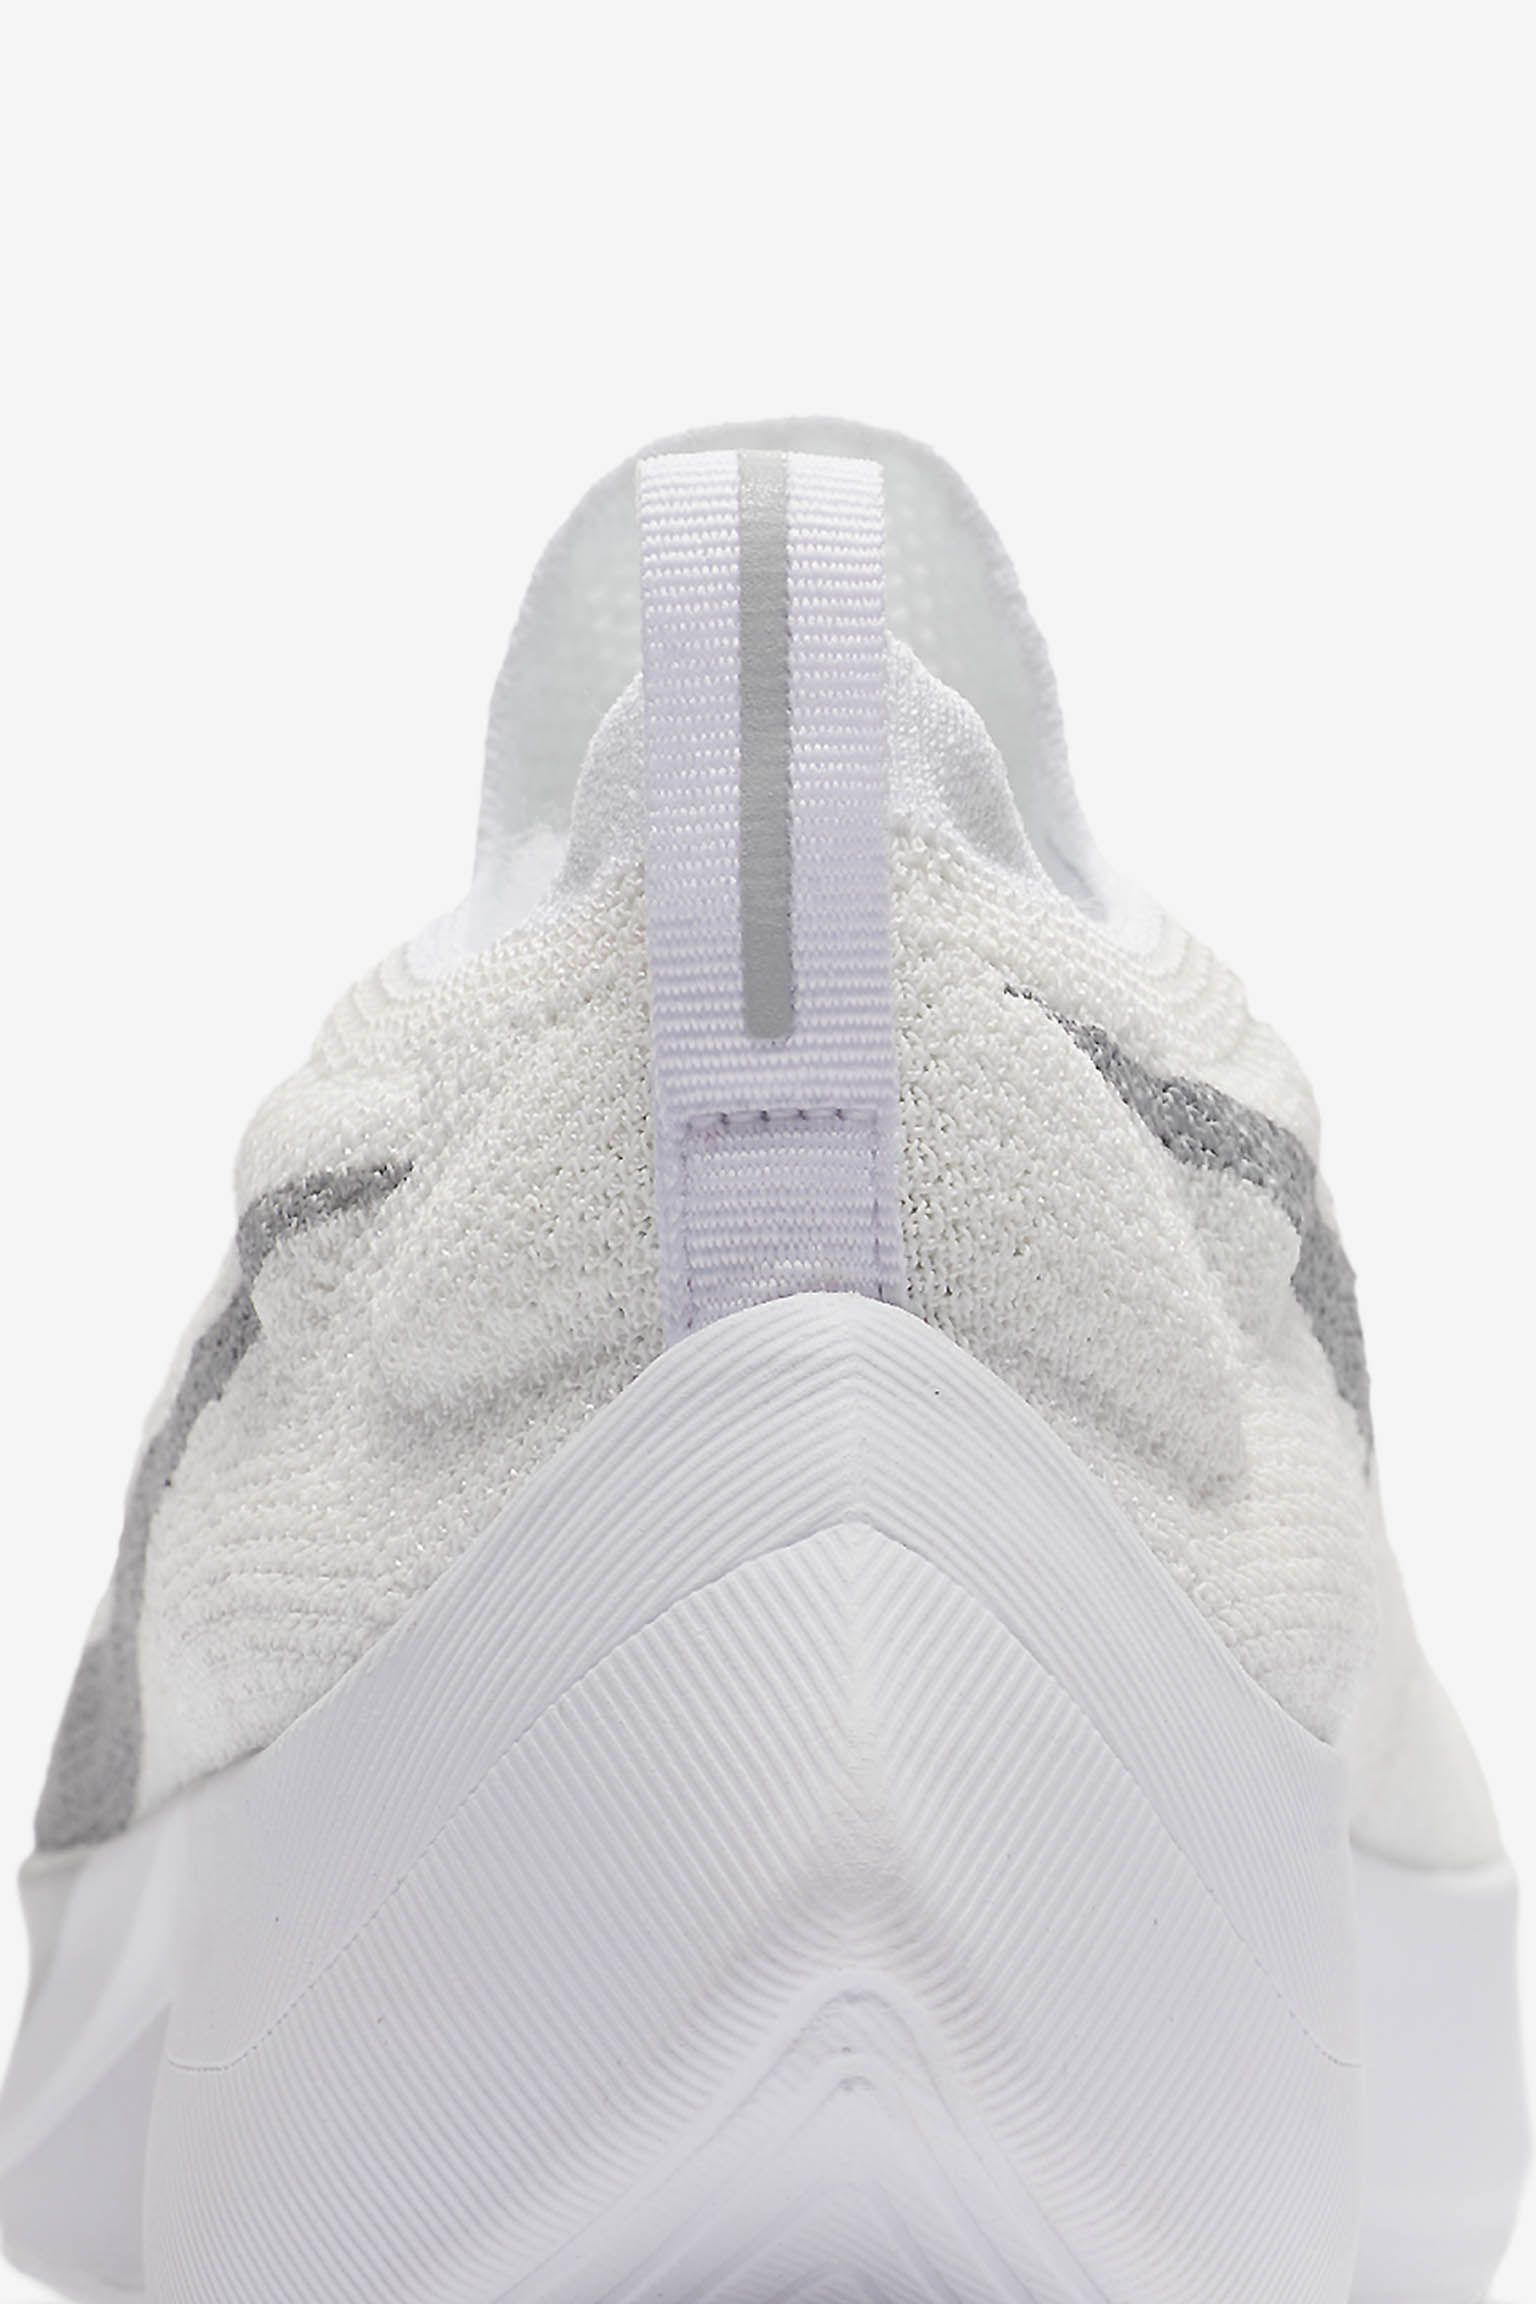 Nike React Vapor Street Flyknit 'White & Wolf Grey' Release Date